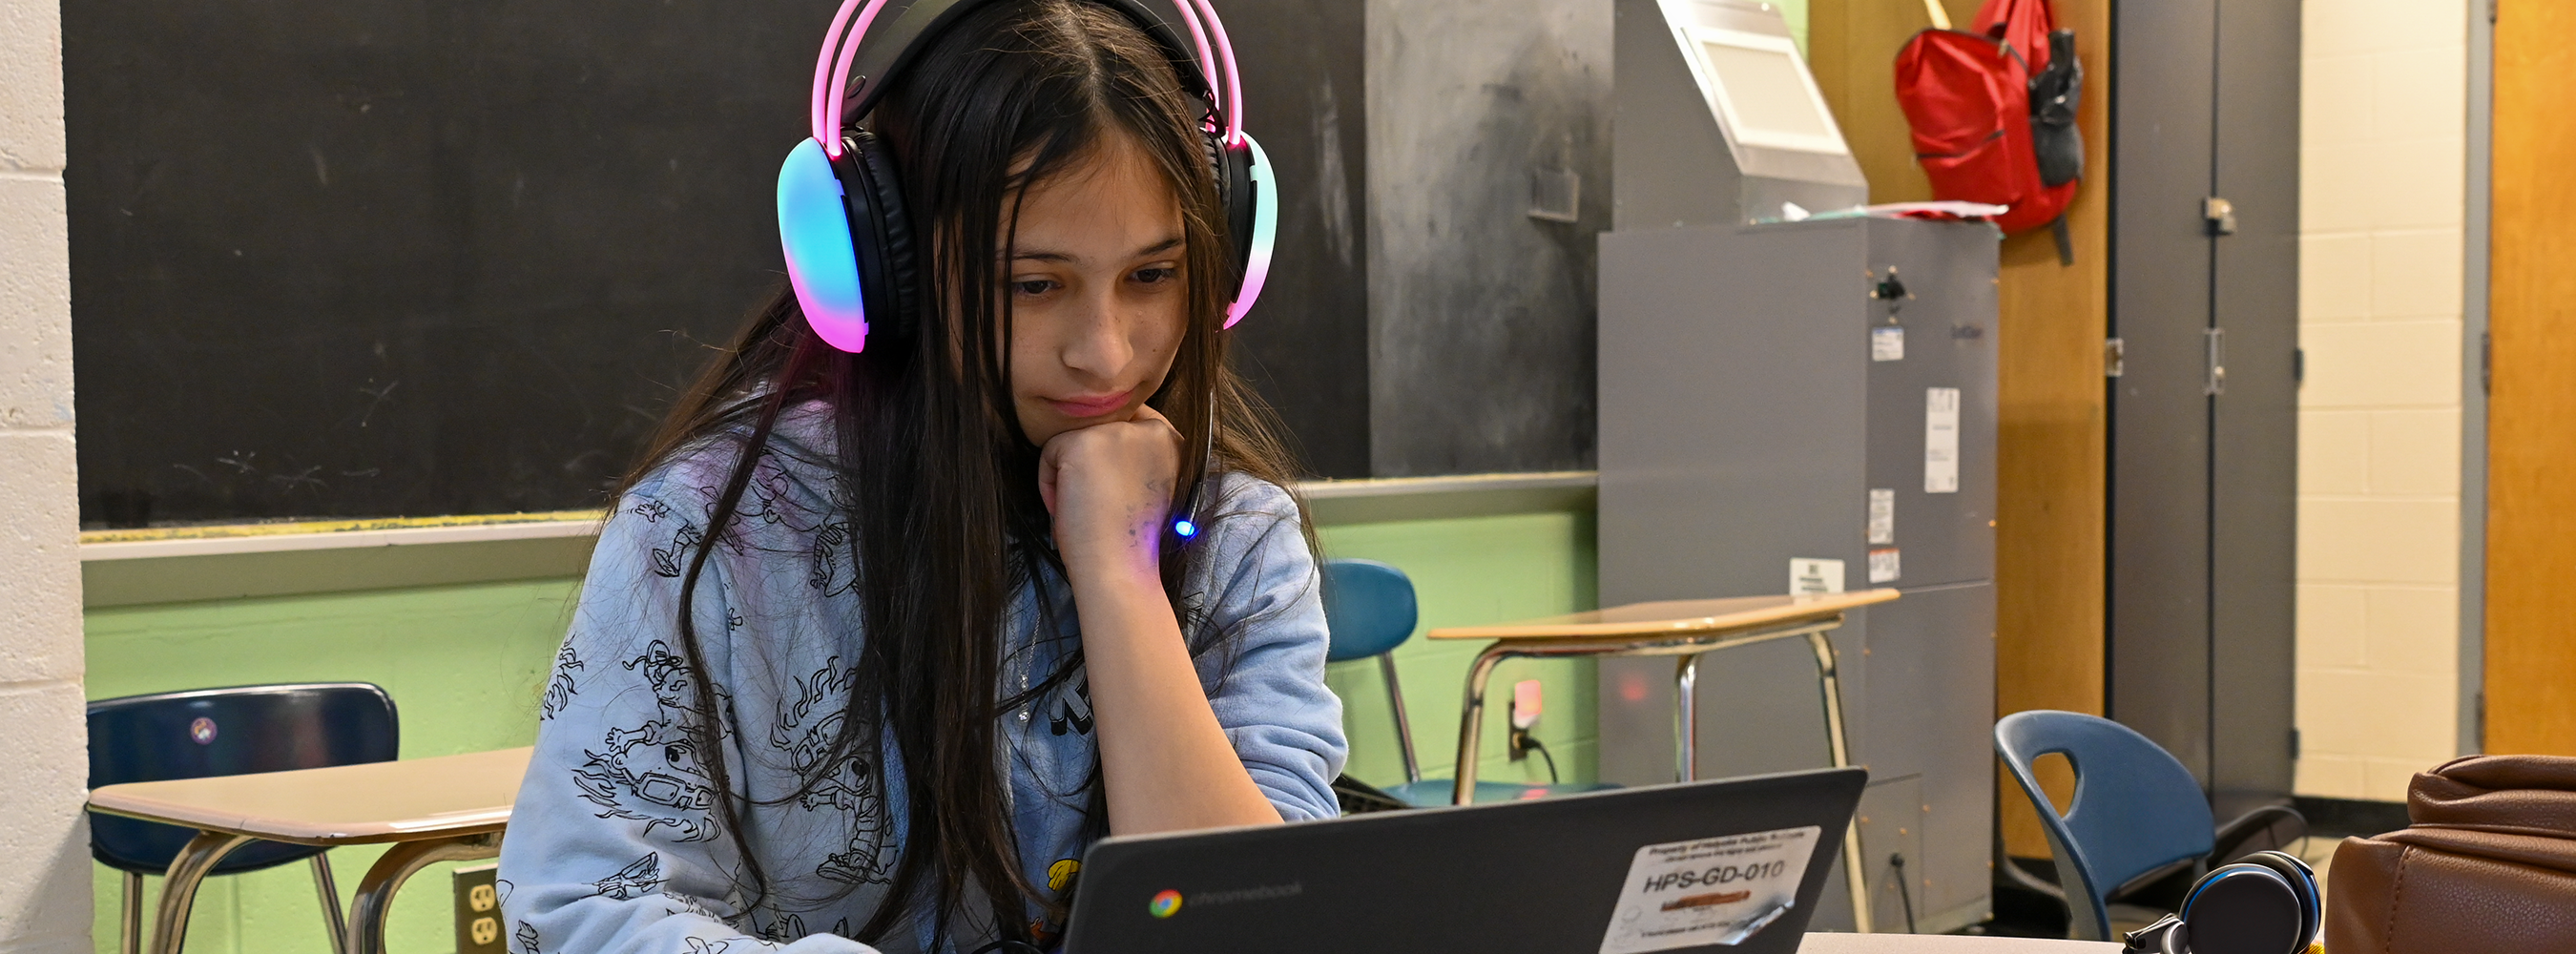 Girl in headphones works on computer